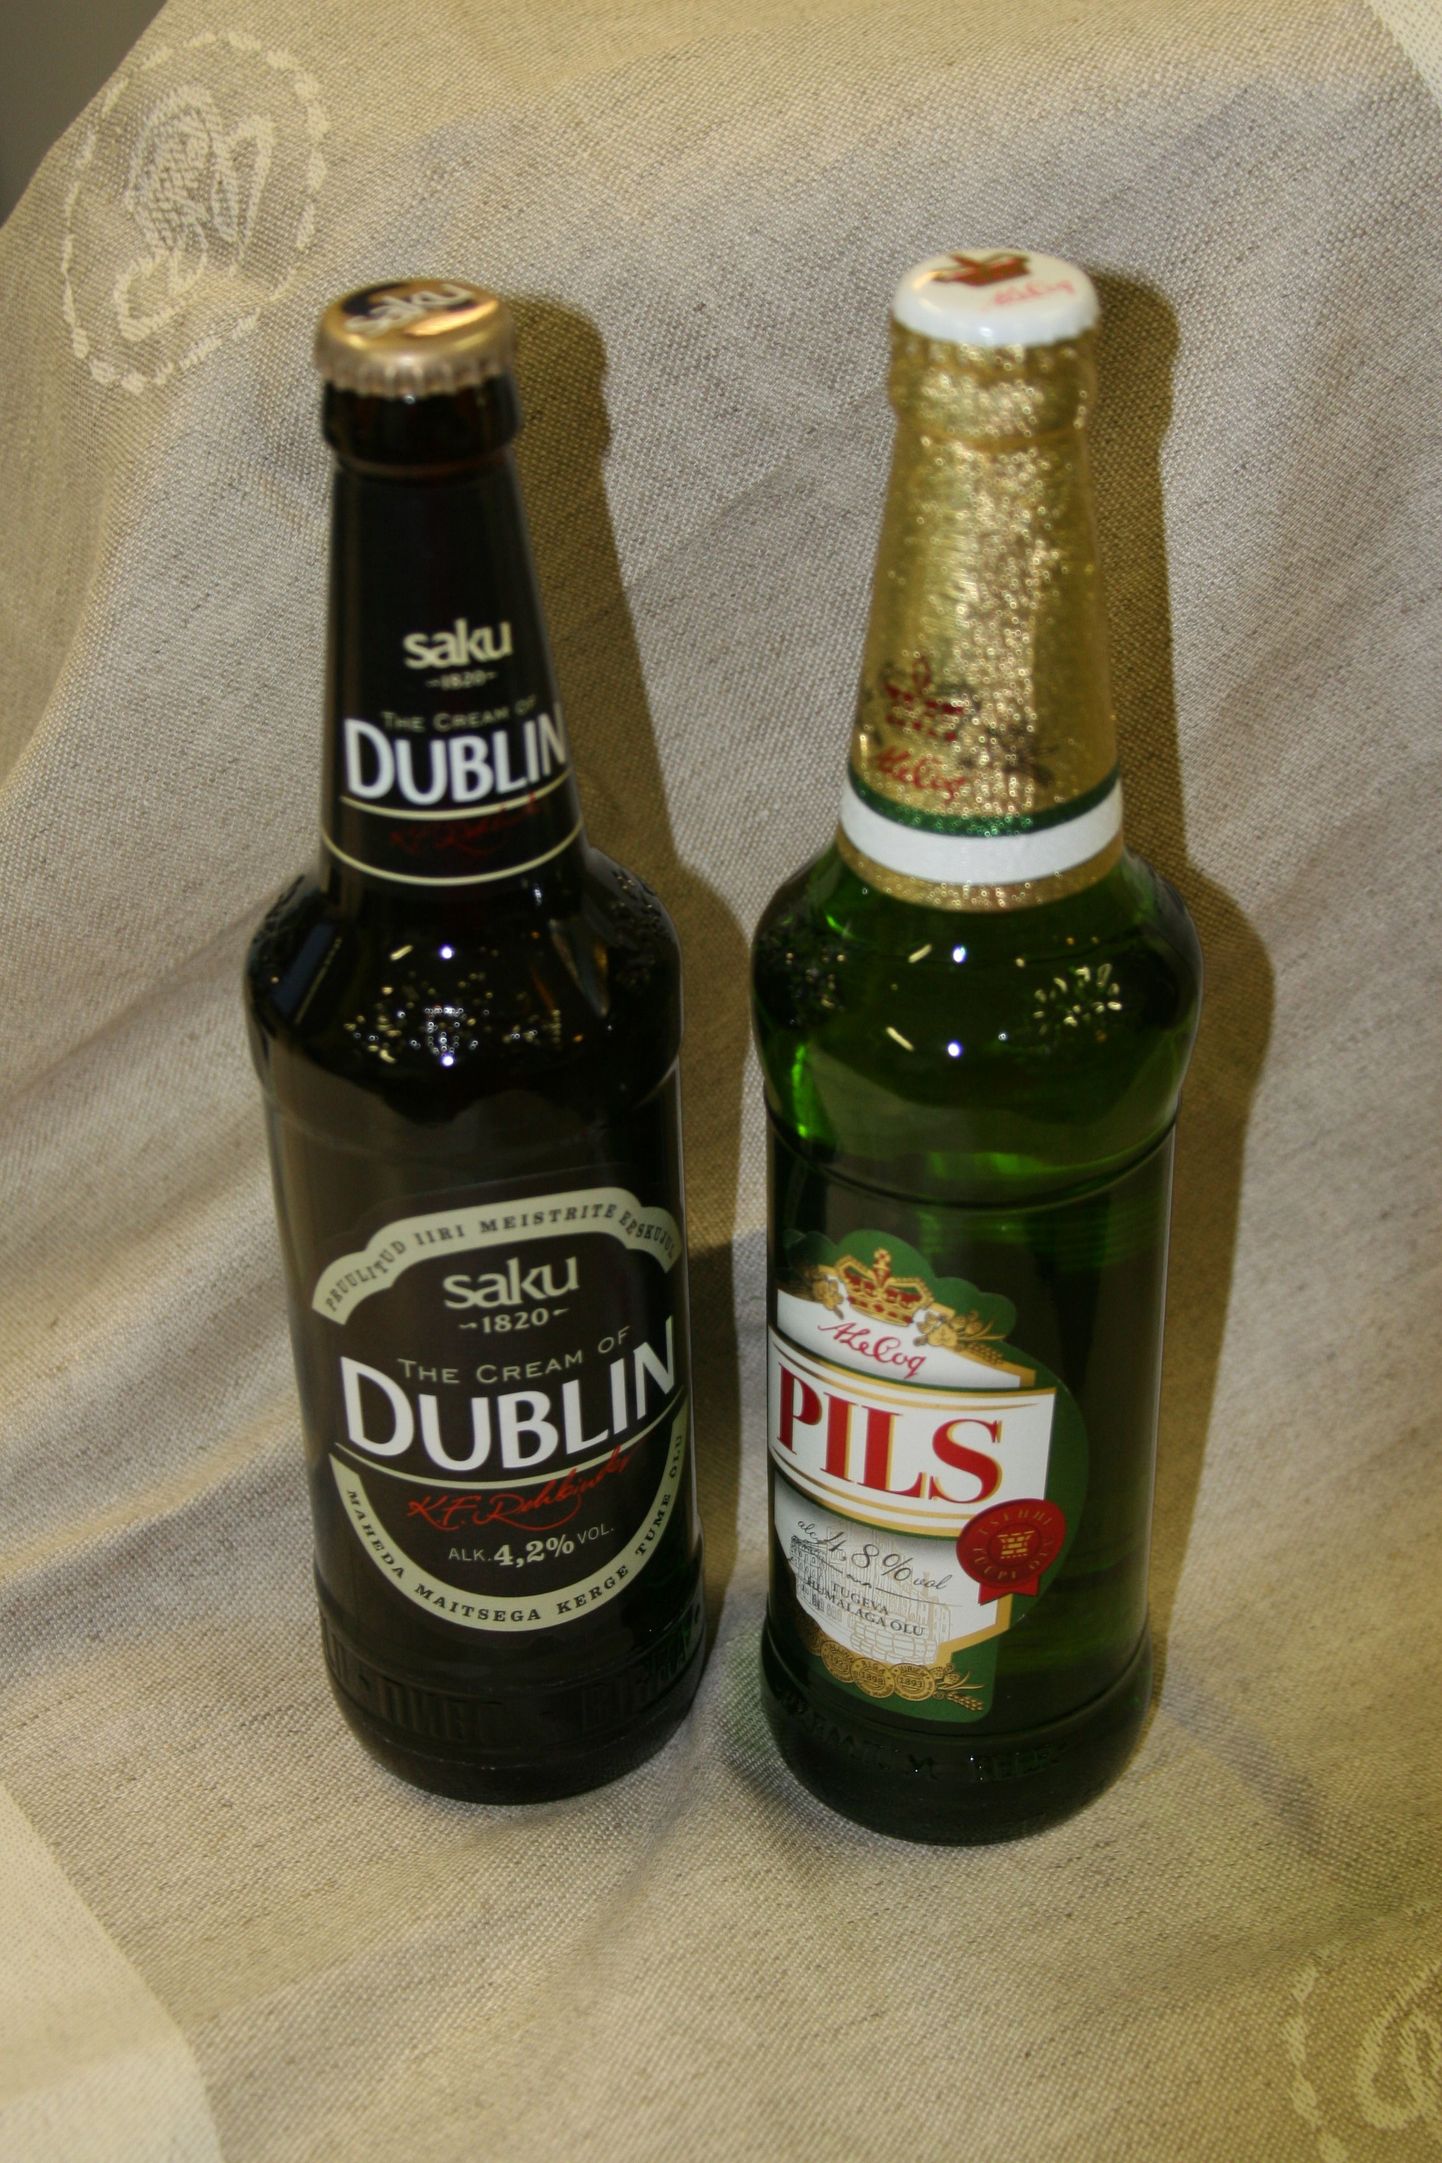 Пиво The Cream of Dublin и Pils.